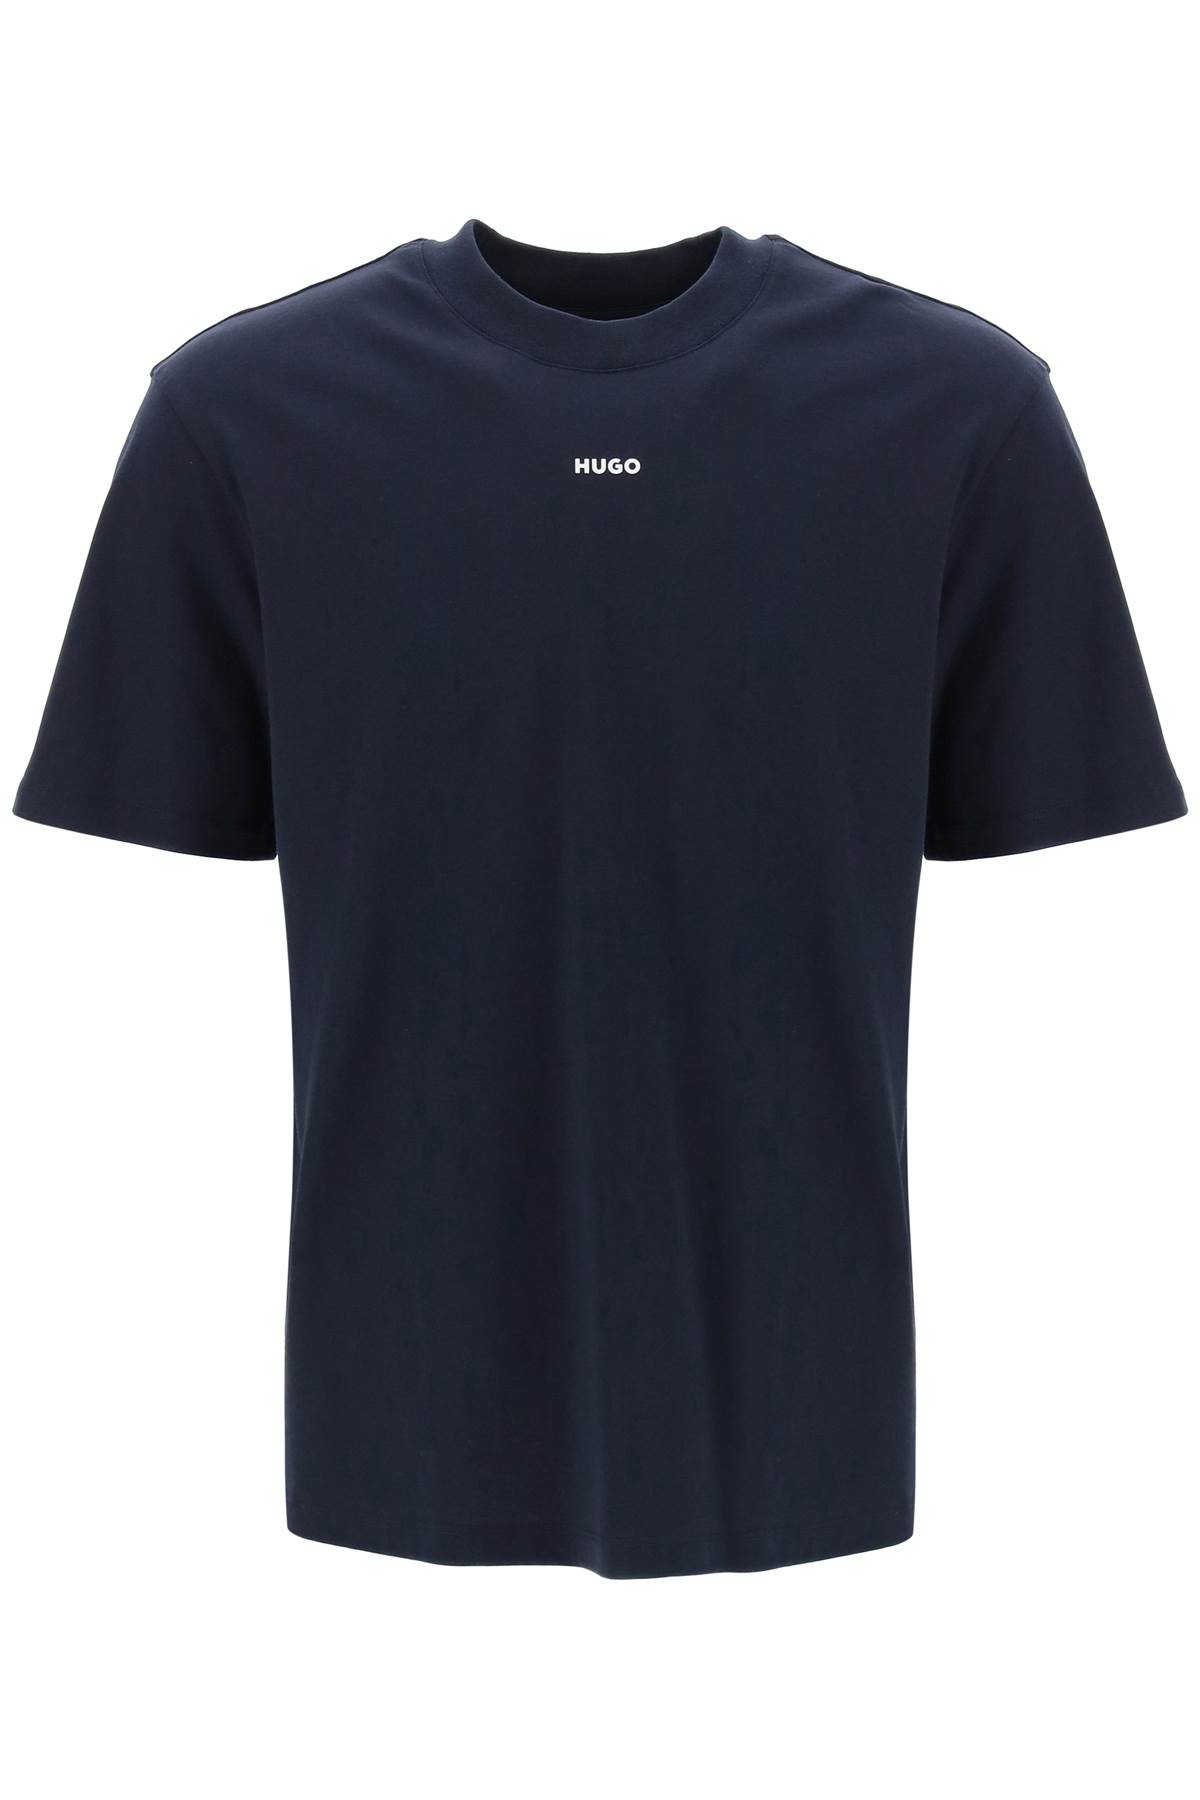 Hugo Boss Dapolino Crew-neck T-shirt In Blue